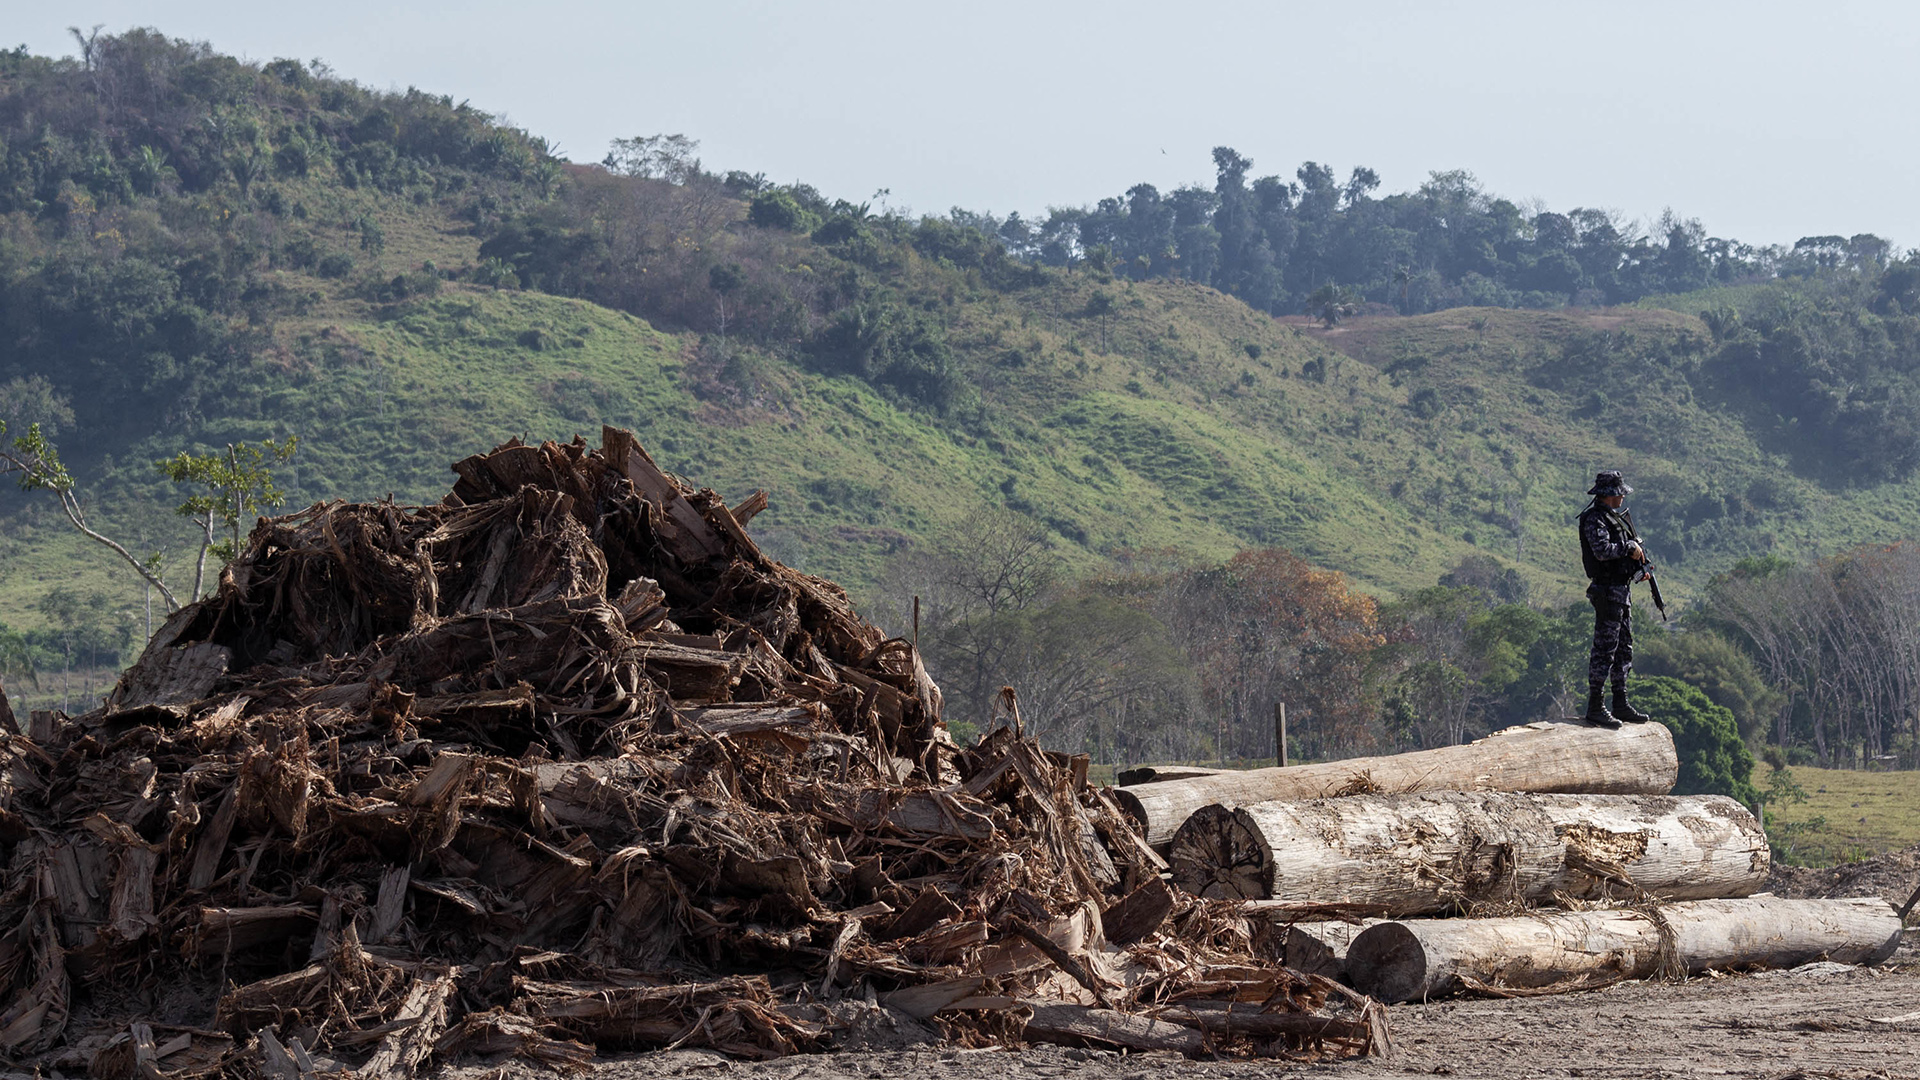 Brasilien, Rondonia: Auf diesem vom brasilianischen Umweltinstitut zur Verfügung gestelltes Bild bewacht ein Soldat Bäume, die illegal gefällt wurden.